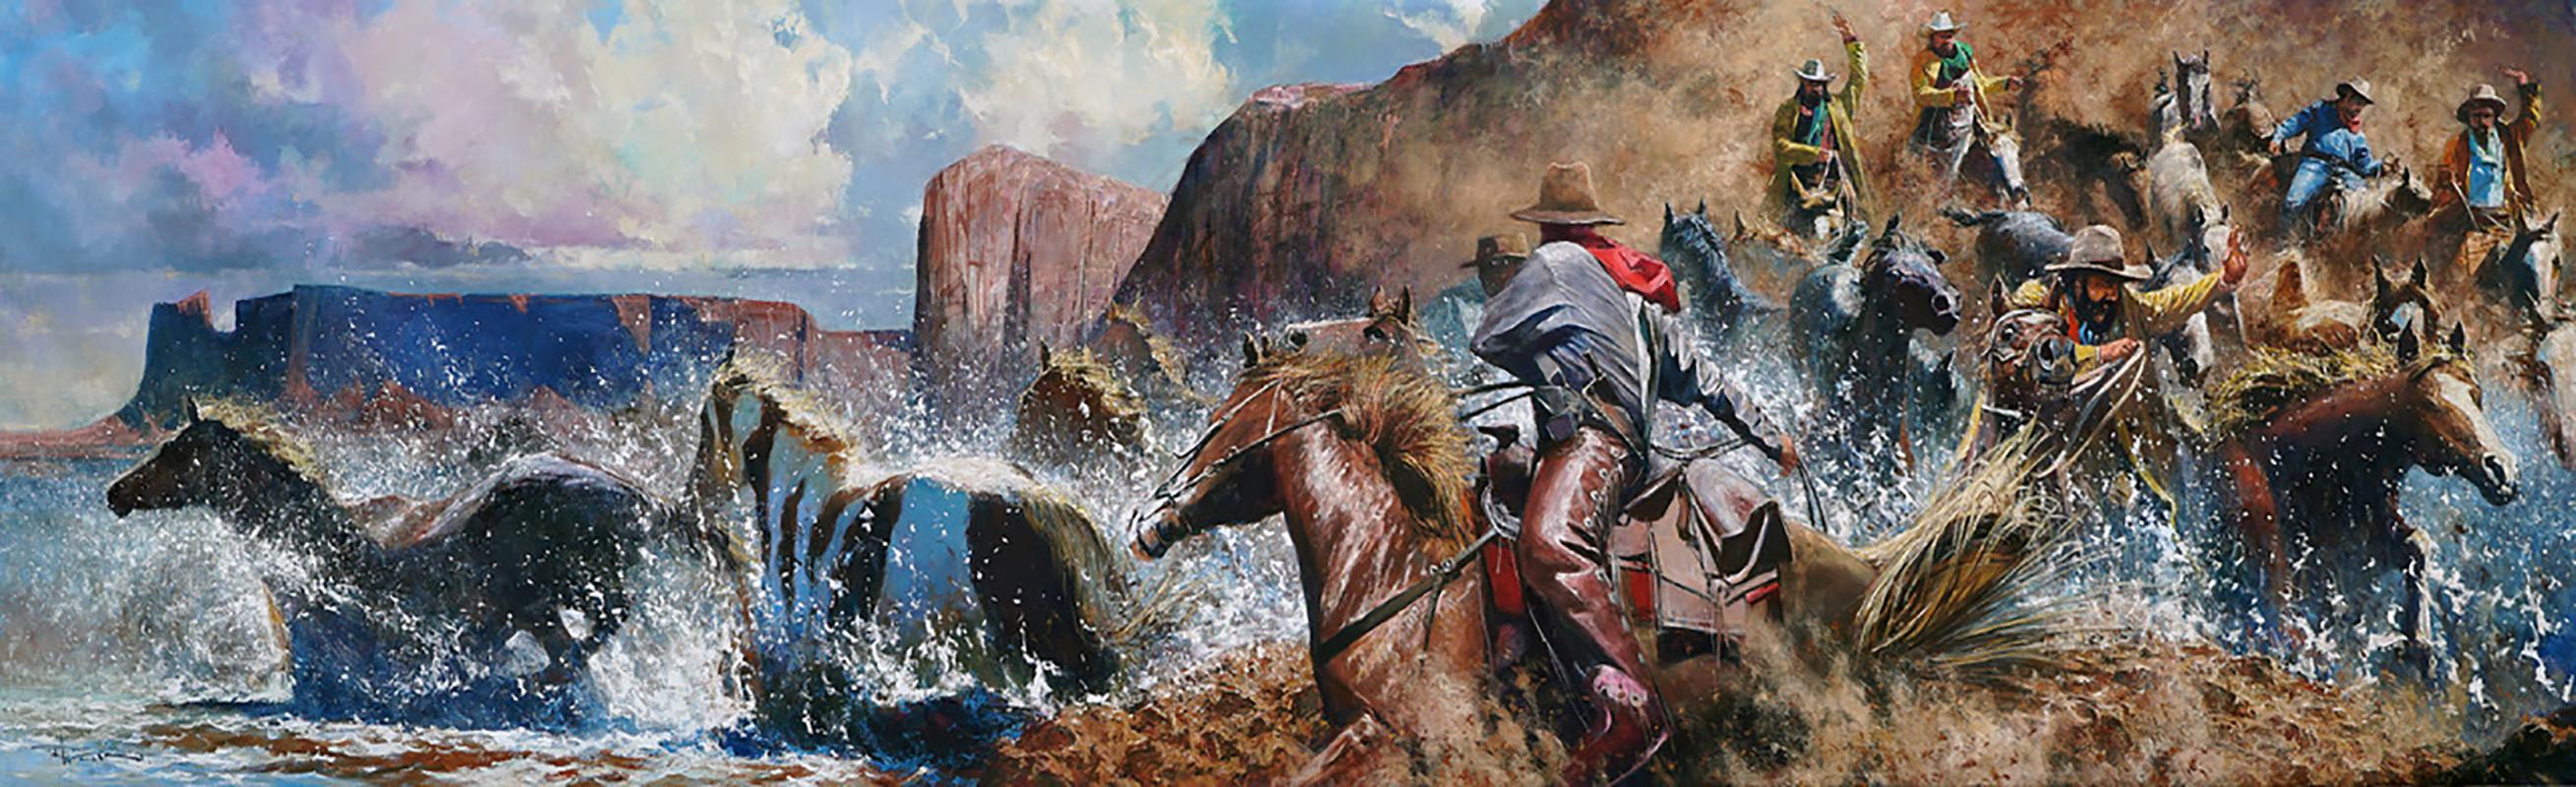 "Moving the Wild Ones" von Robert Hagan ist ein Original Öl auf Leinwand und misst 60x216.  
Auf diesem großen Originalgemälde von Robert Hagan rennen Cowboys auf Pferden durch die Canyon-Berge, wirbeln Staub auf und versuchen, entlaufene Mustangs